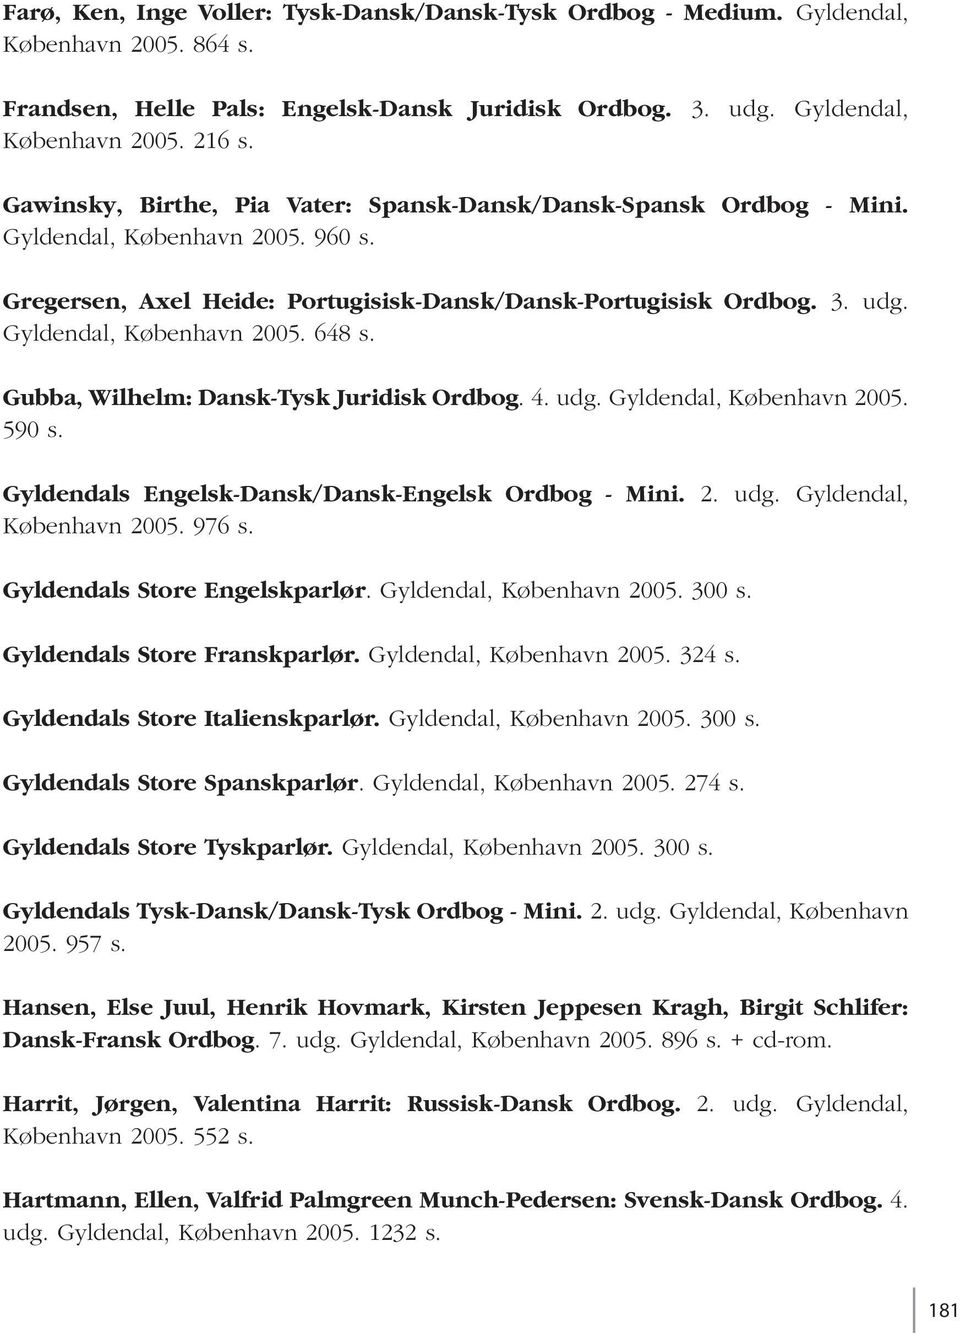 Gyldendal, København 2005. 648 s. Gubba, Wilhelm: Dansk-Tysk Juridisk Ordbog. 4. udg. Gyldendal, København 2005. 590 s. Gyldendals Engelsk-Dansk/Dansk-Engelsk Ordbog - Mini. 2. udg. Gyldendal, København 2005. 976 s.